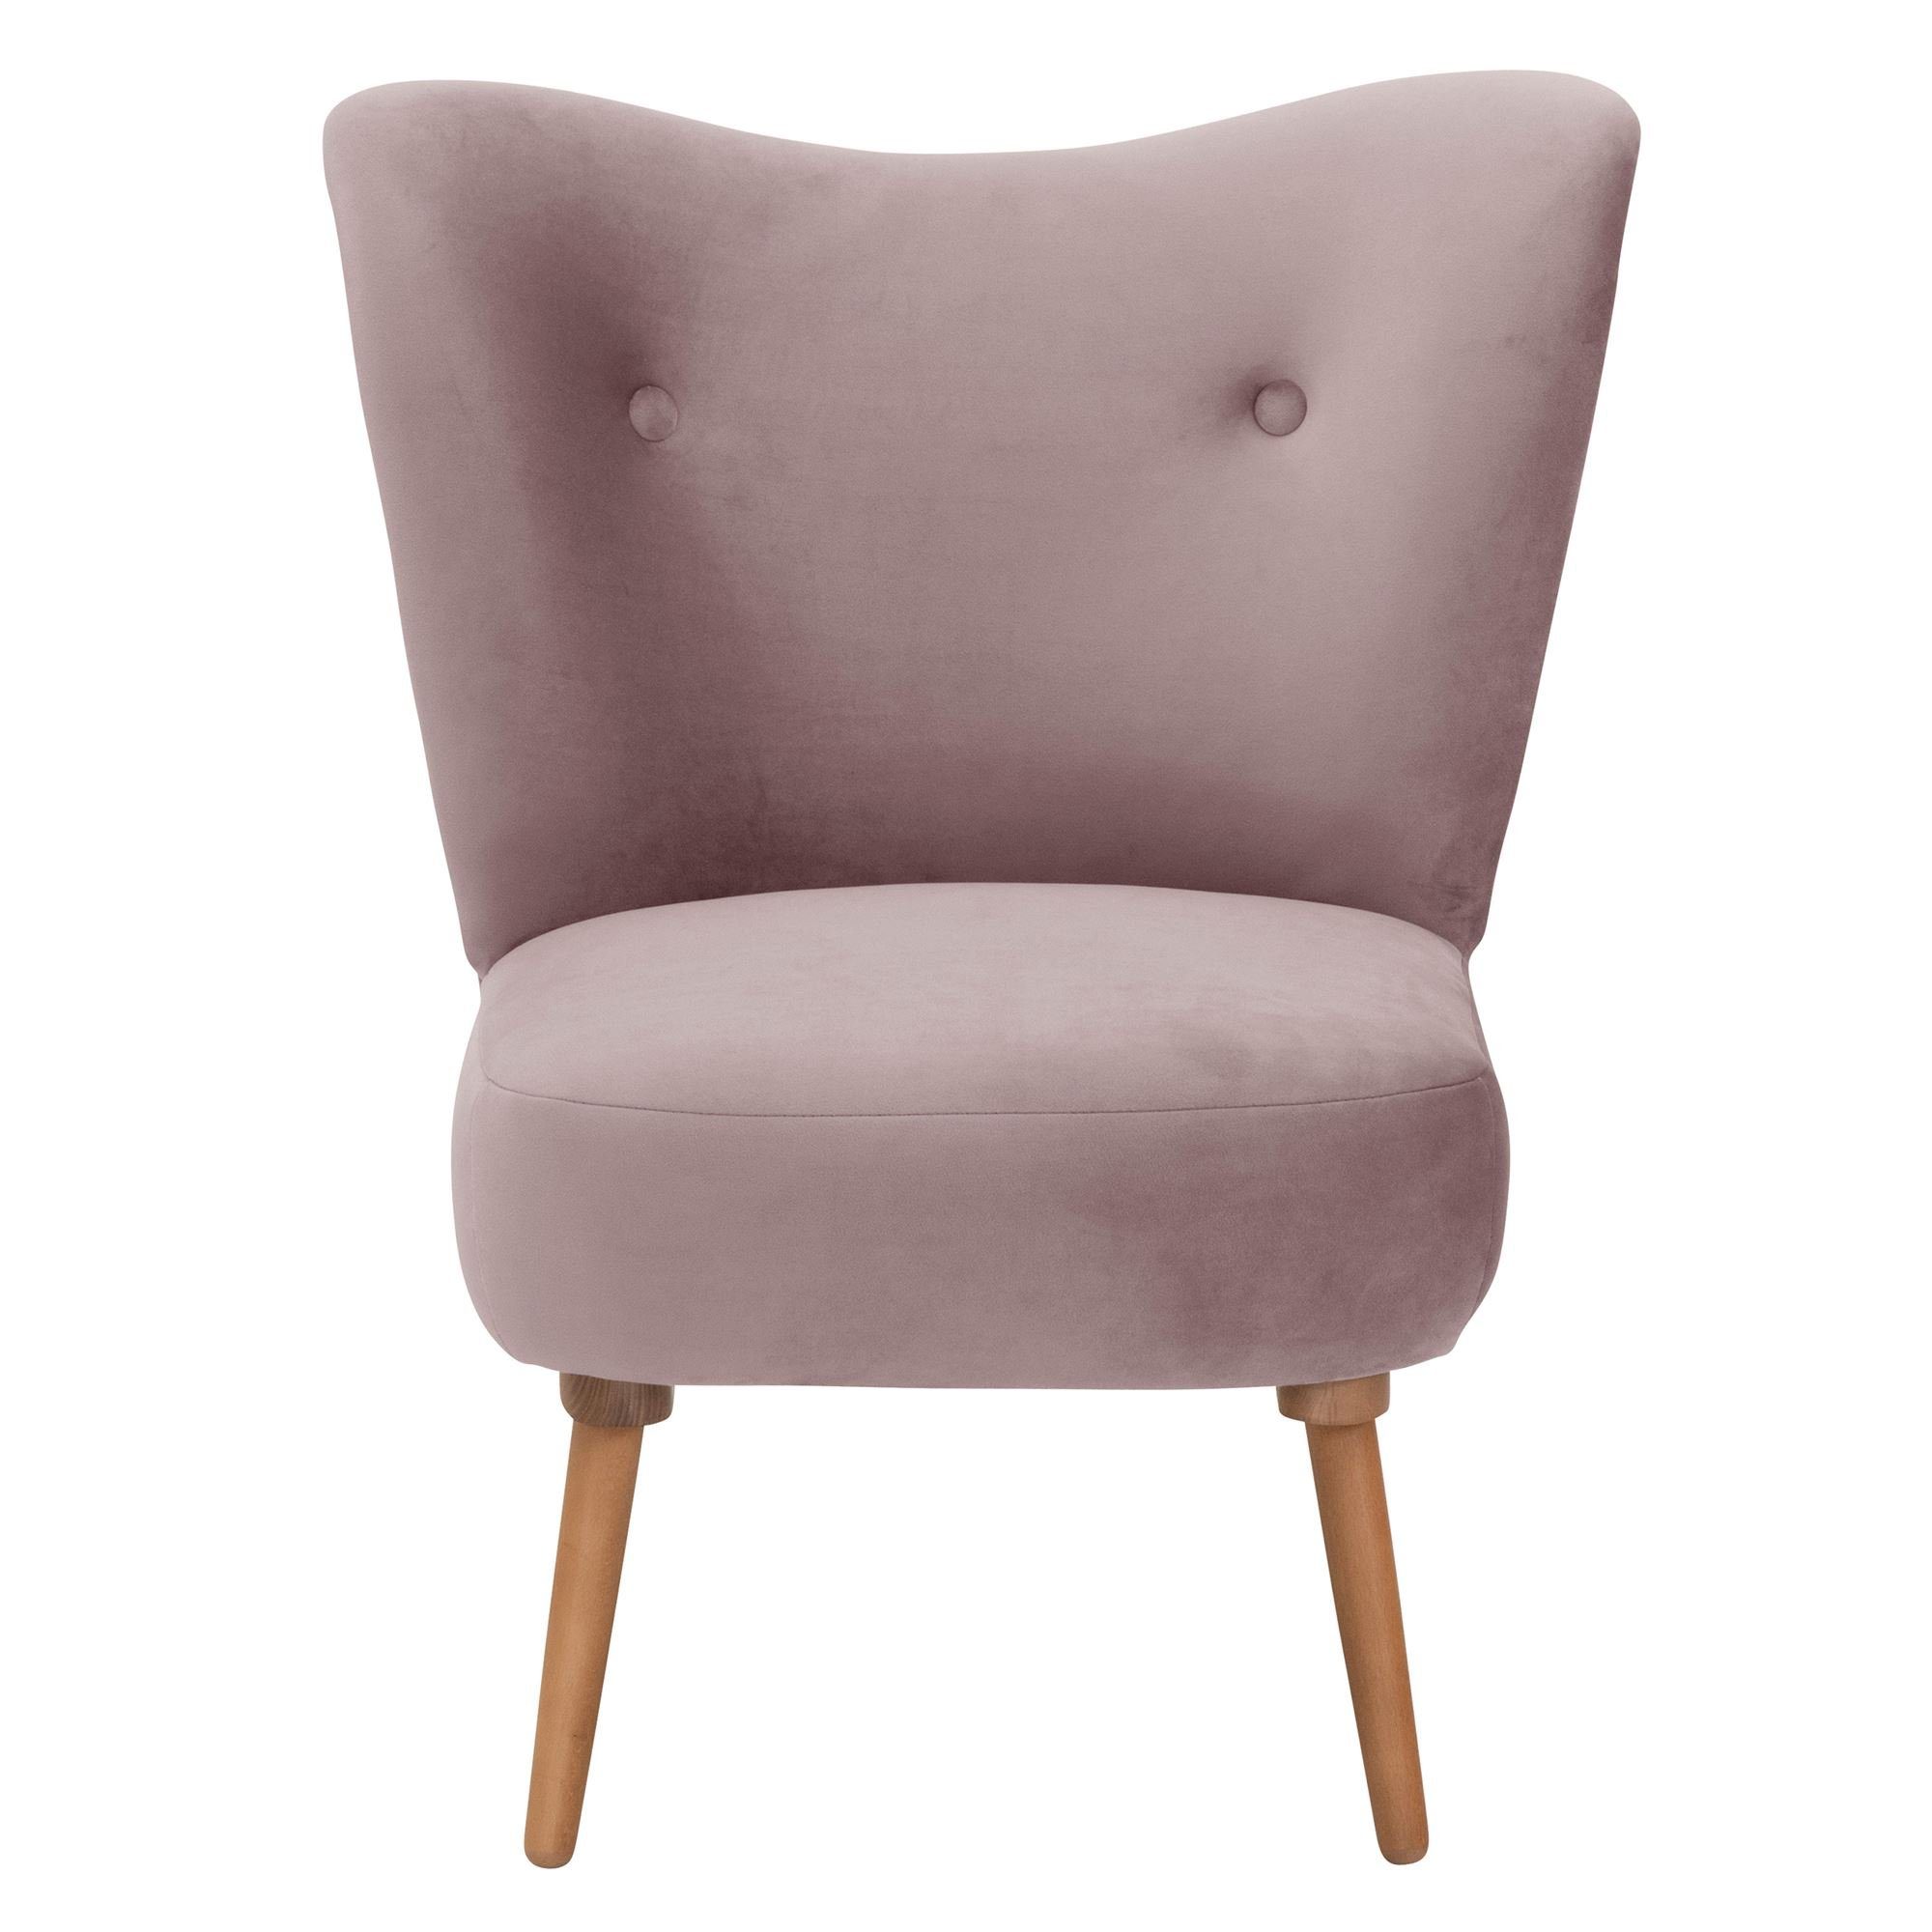 Versand, hochwertig Sessel Buche 23186 aufm Kostenlosem / 1-St), lackiert Bezug Sessel verarbeitet,bequemer Kaila Sitz inkl. rosé Samtvelours (Sparpreis erlefarbig 58 Kessel